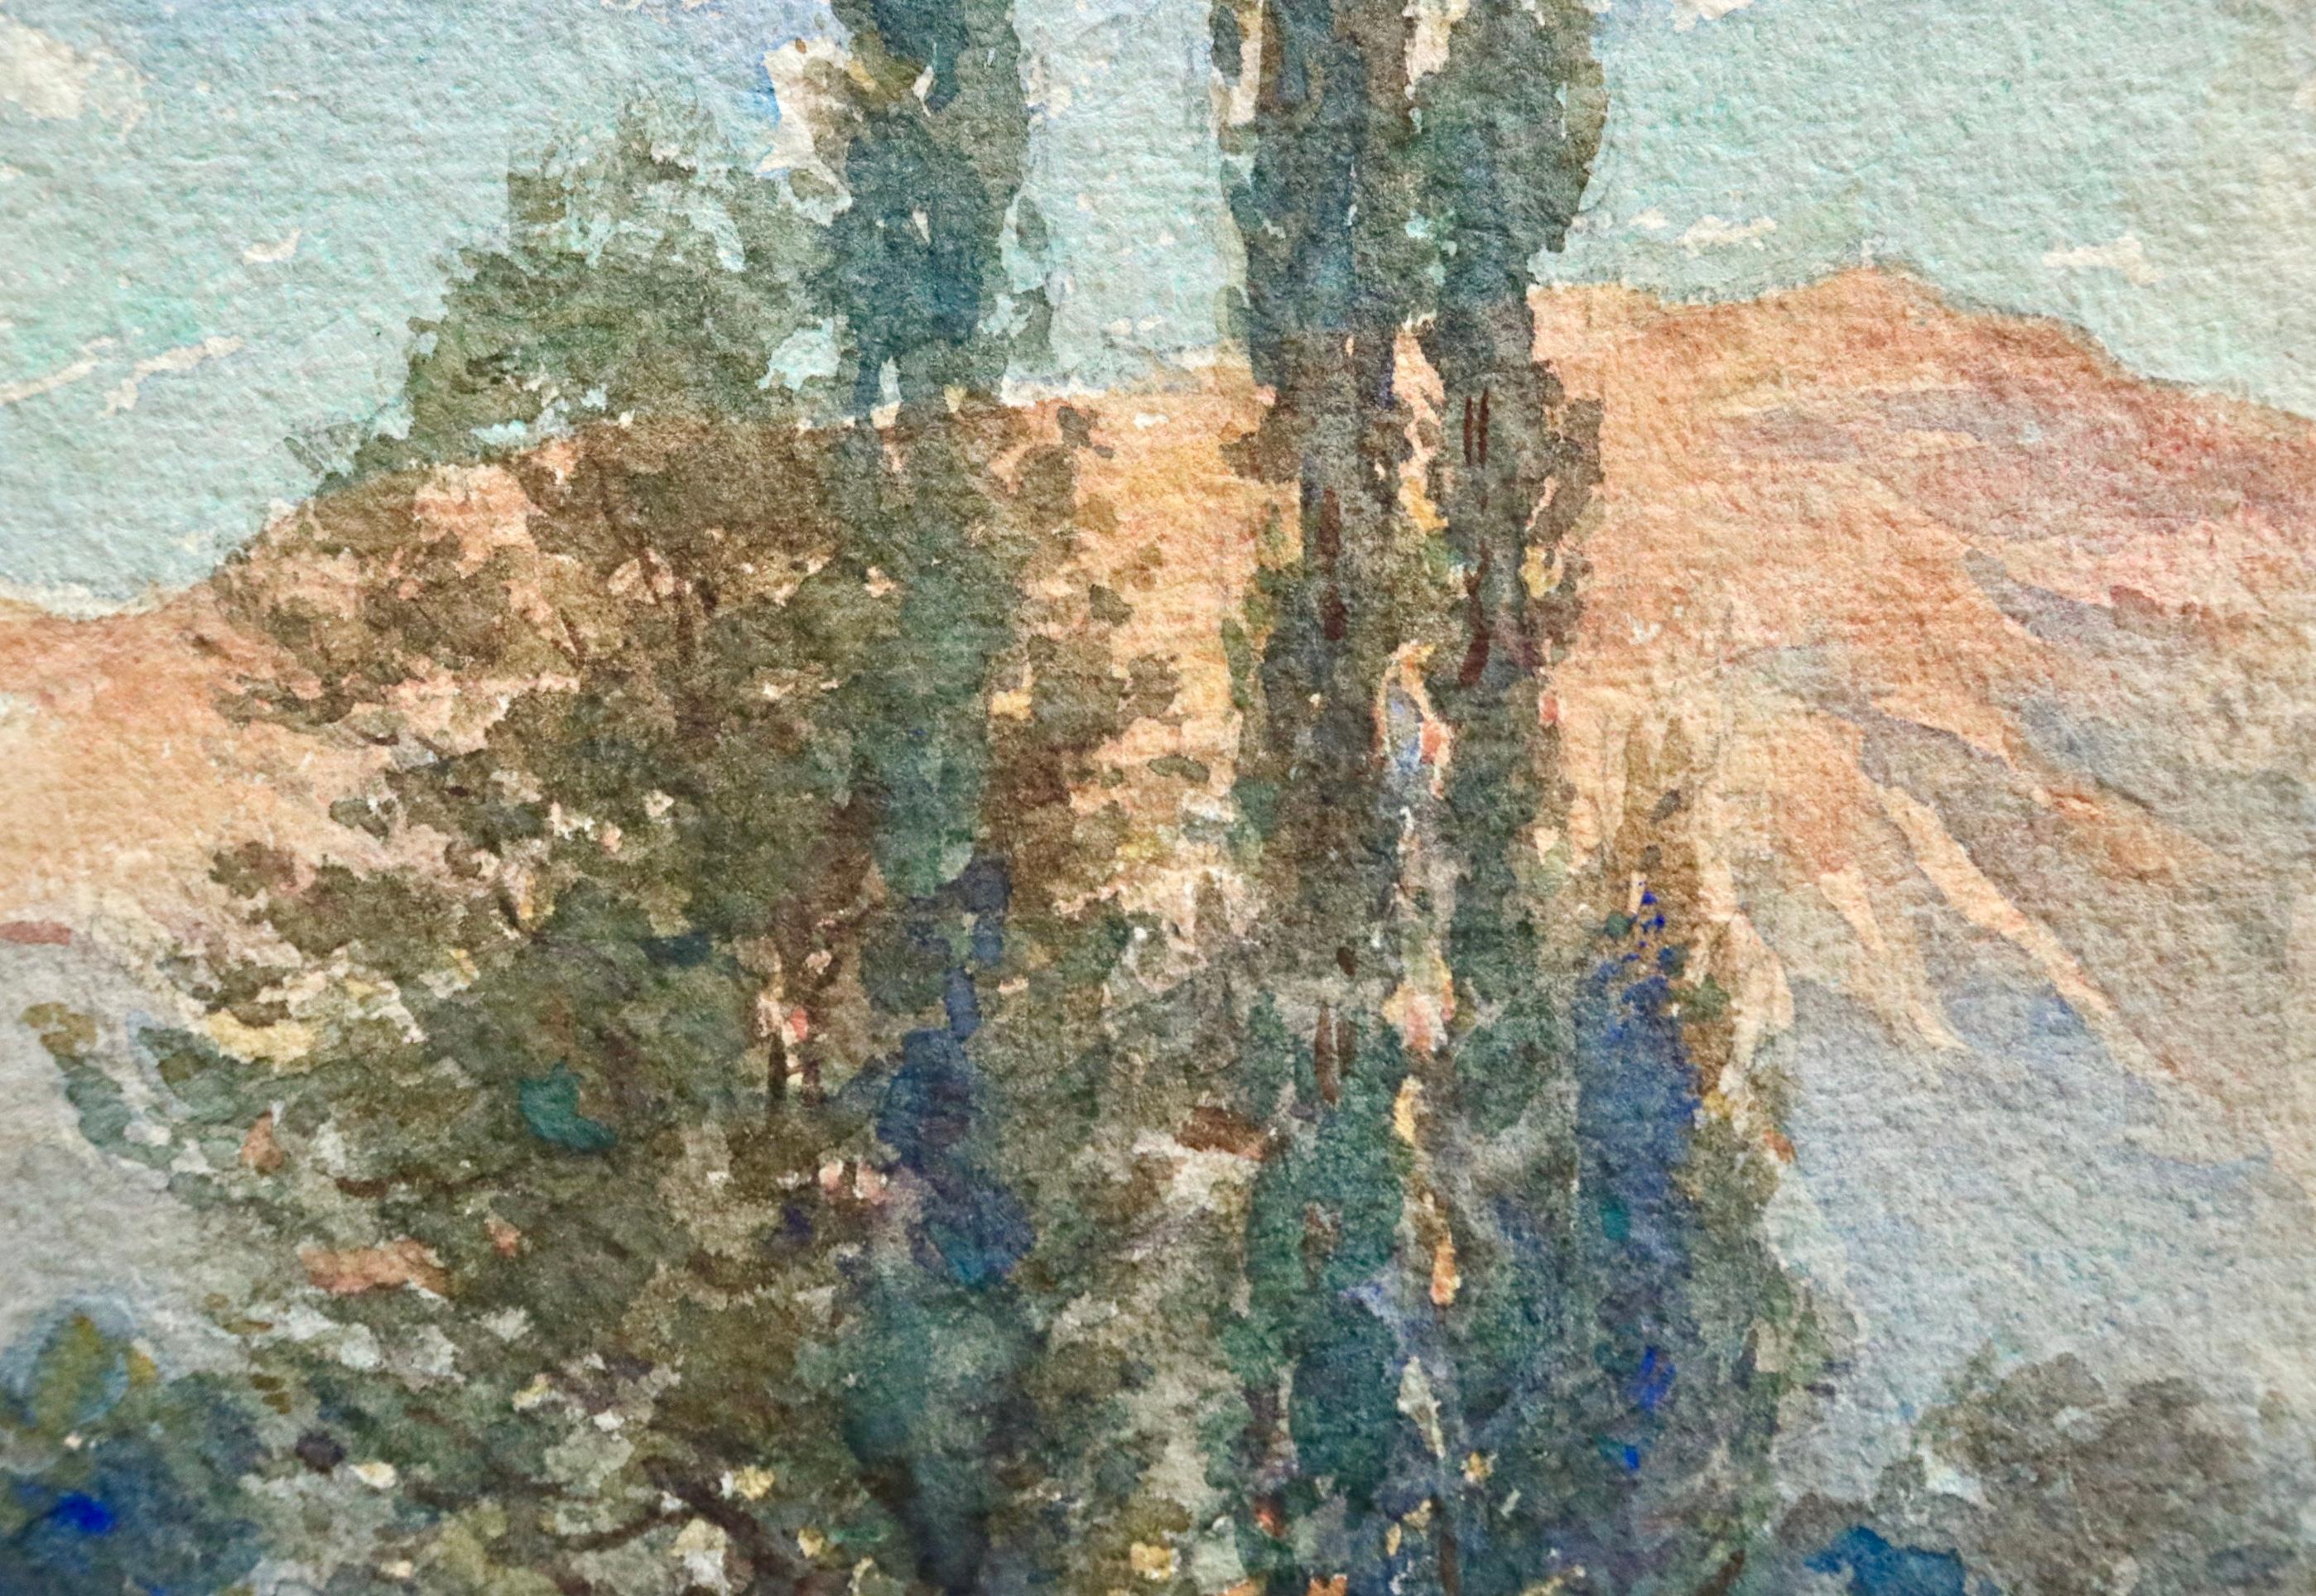 Aquarell auf Papier von Henri Duhem, das eine elegante Frau zeigt, die zwischen Bäumen in einer Landschaft spazieren geht, in der sich die Farben der untergehenden Sonne in den dahinter liegenden Bergen spiegeln. Signiert unten rechts. Ein passendes